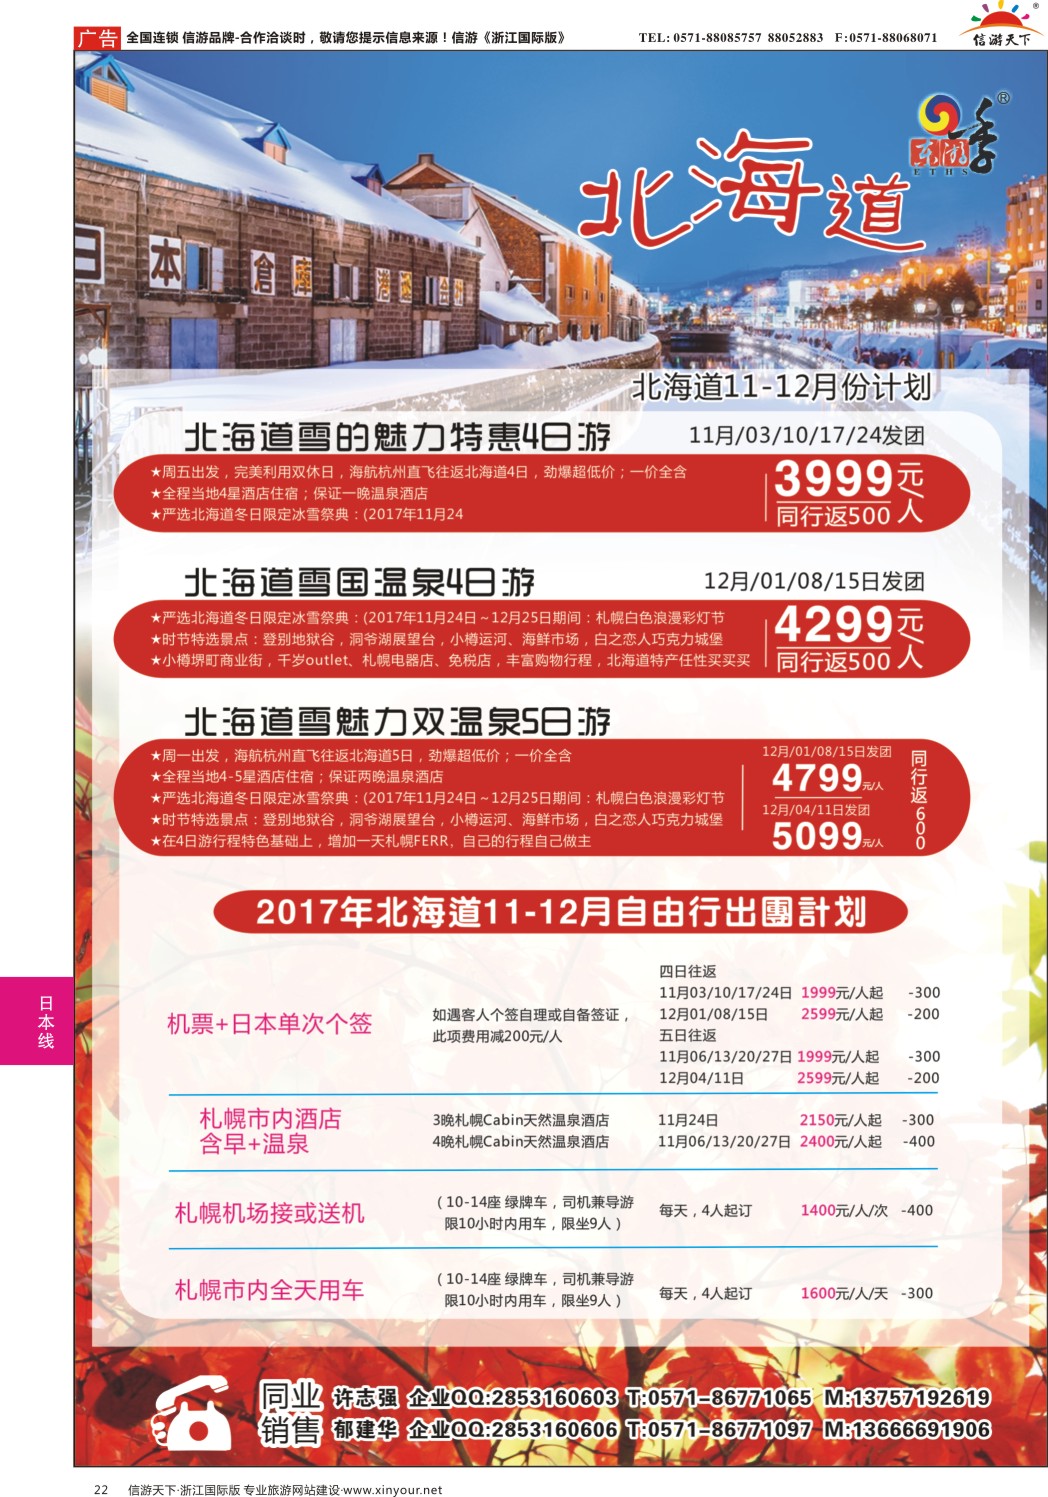 22港中旅（杭州）日本北海道计划